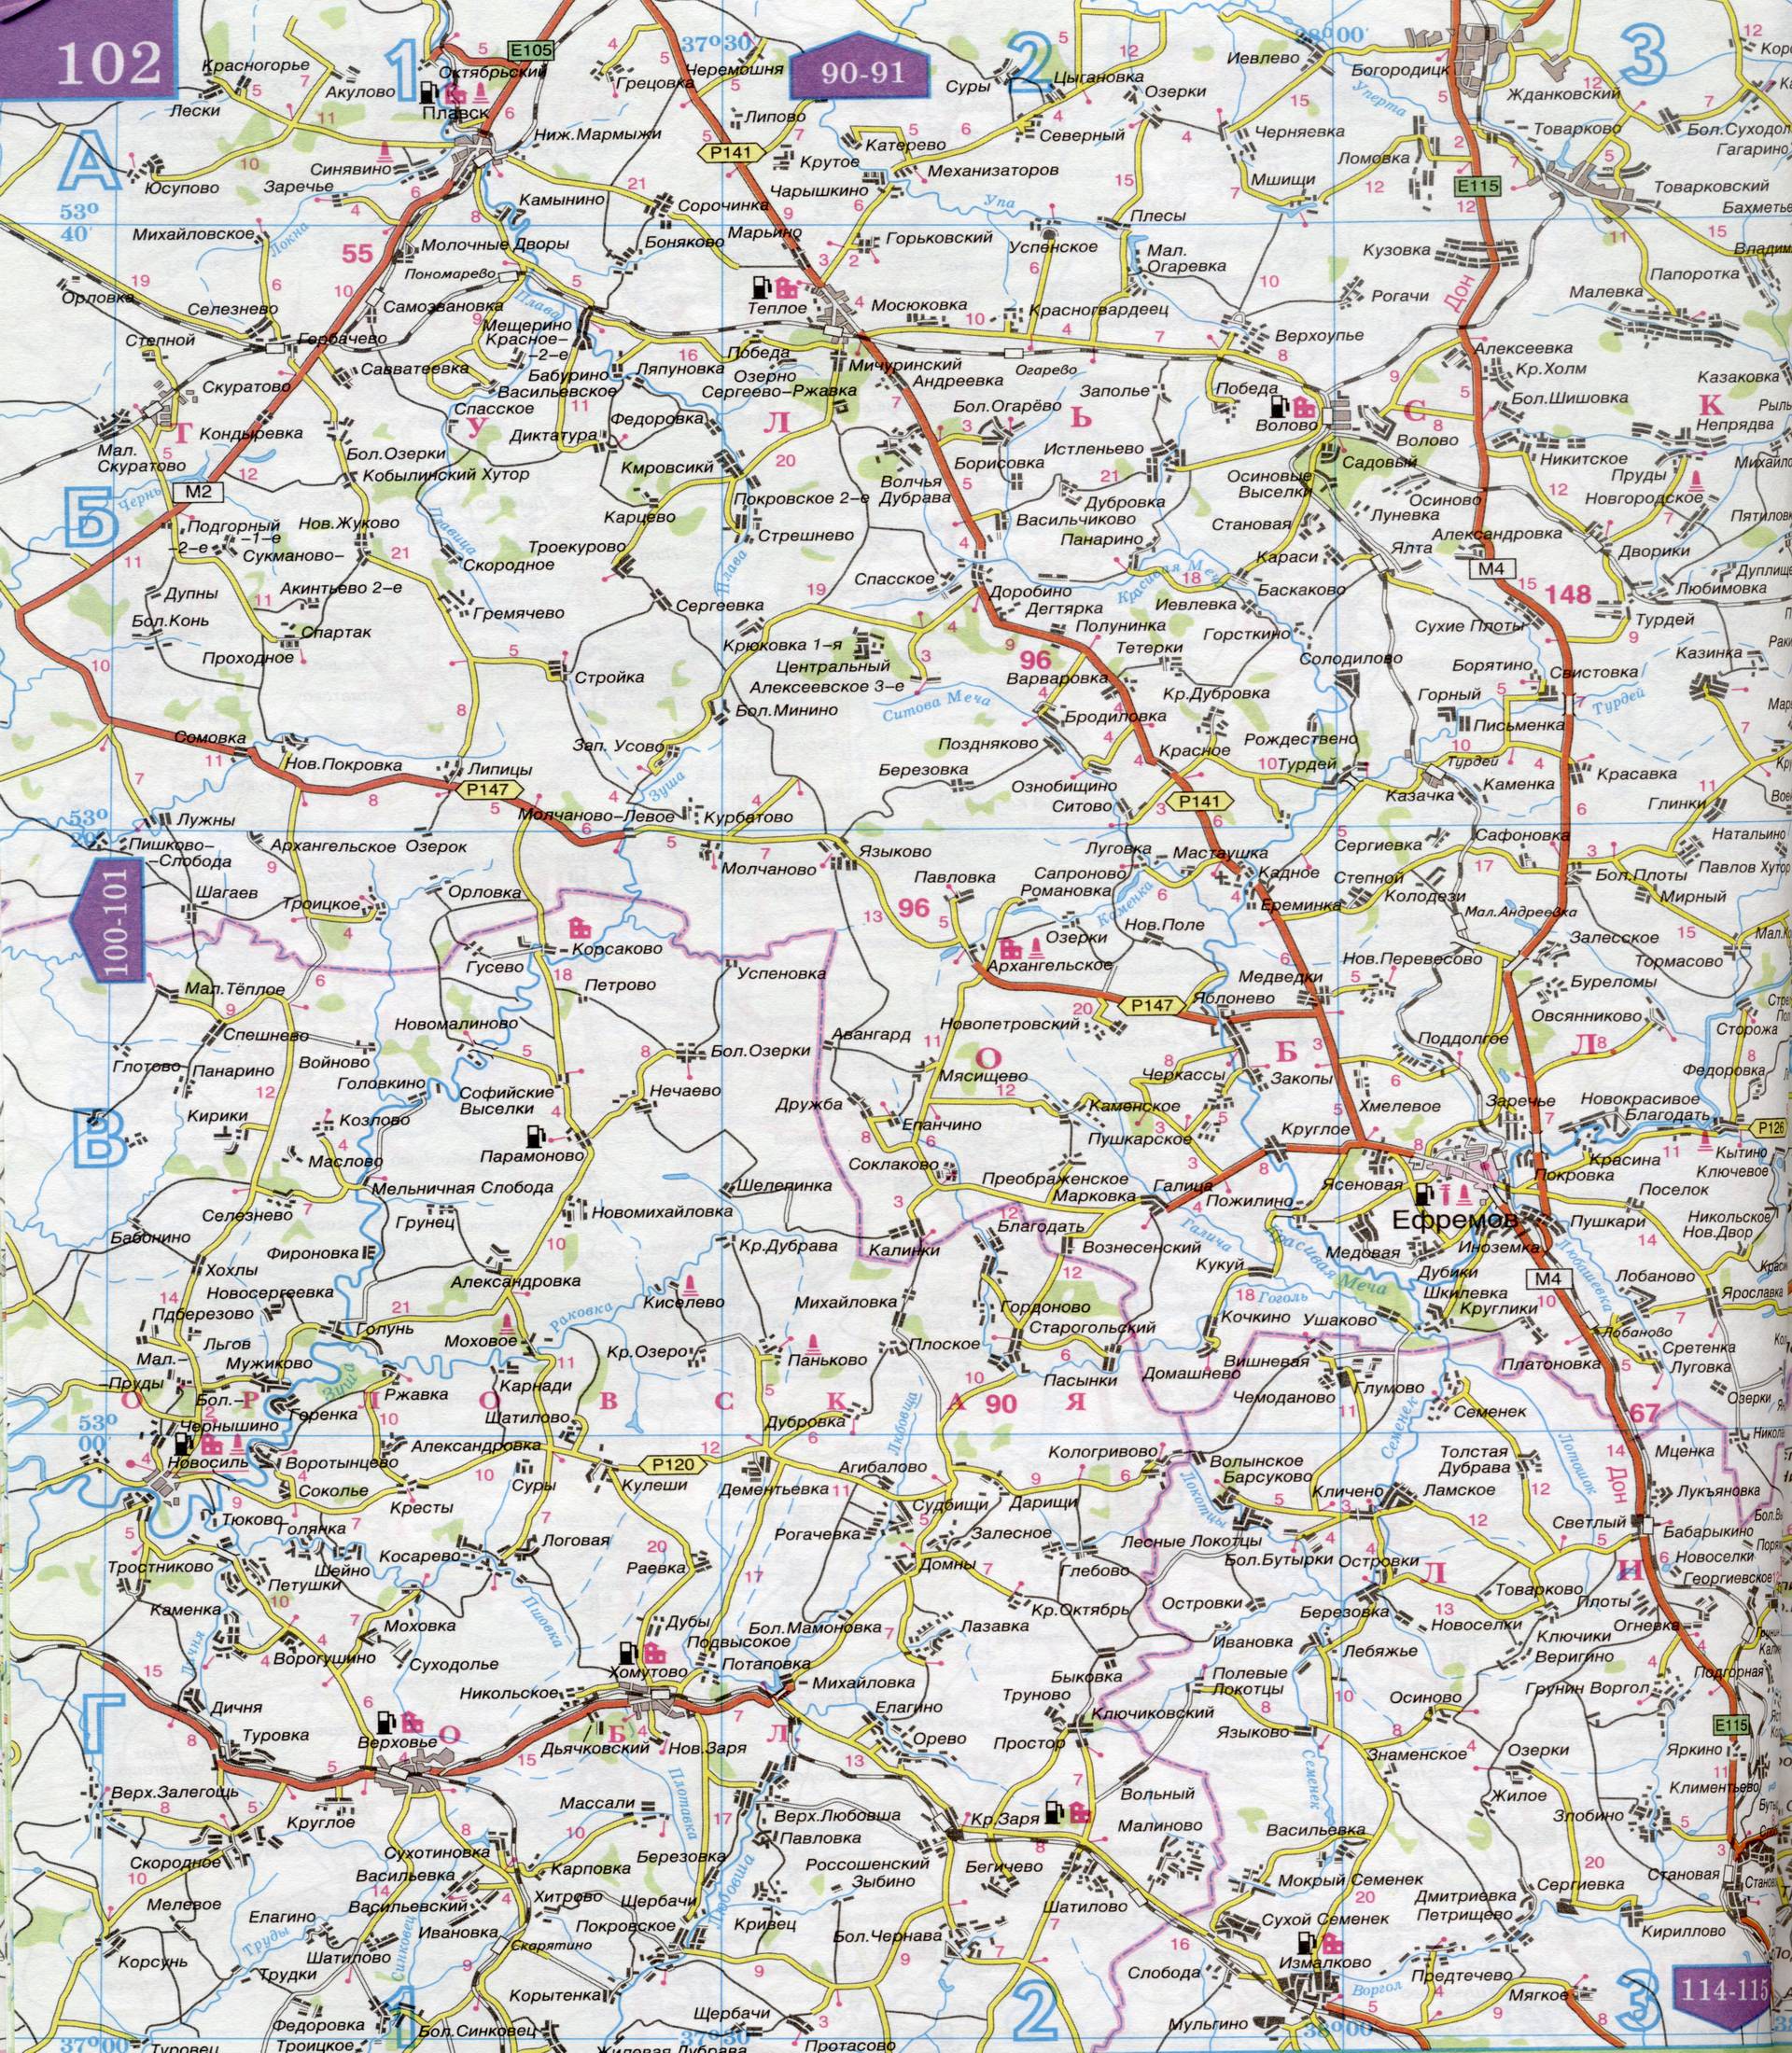 Карта Орловской области 1см:5км. Карта автомобильных дорог Орловской области, B0 - 